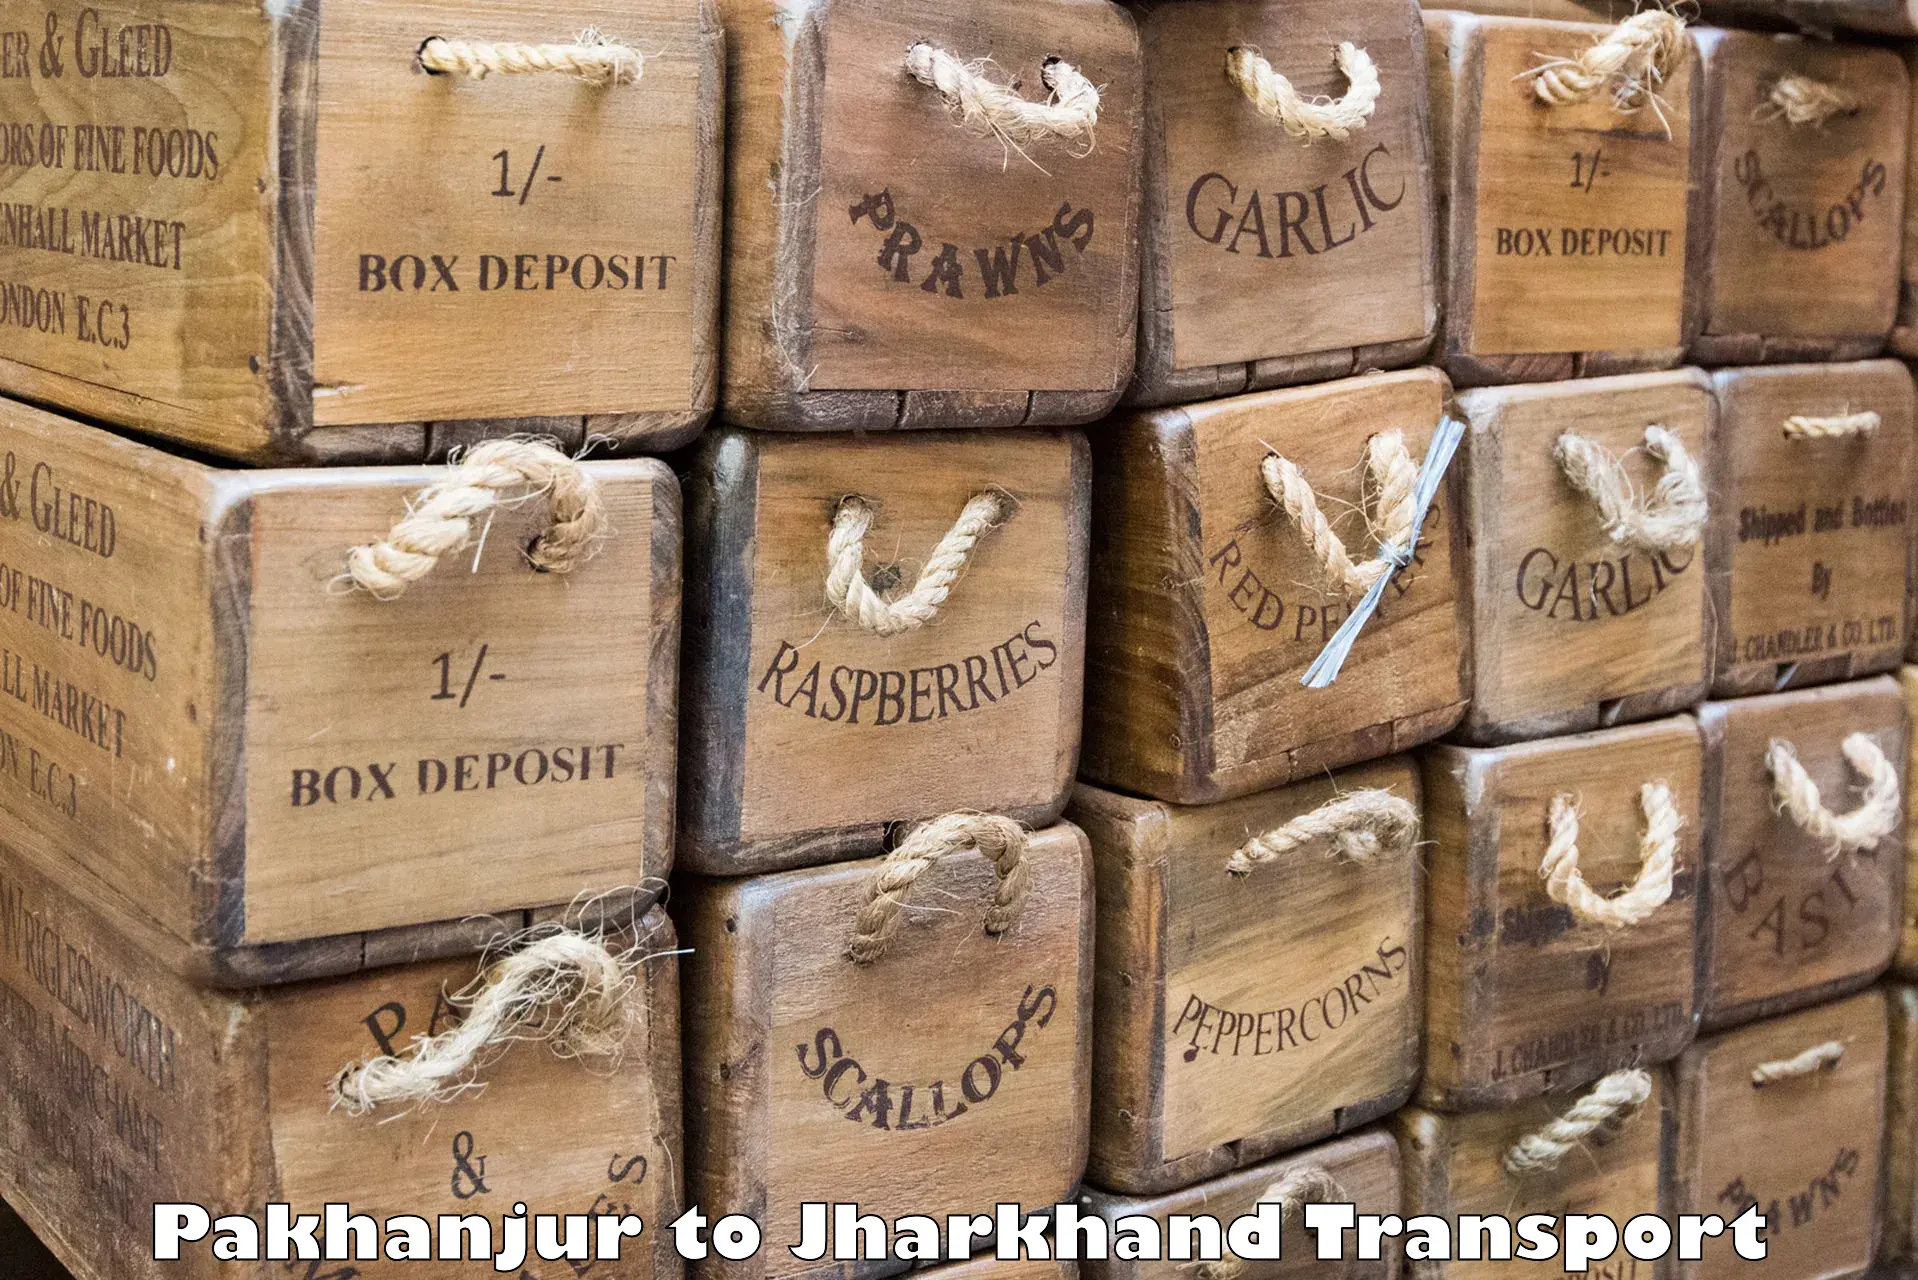 Shipping services Pakhanjur to Bero Ranchi